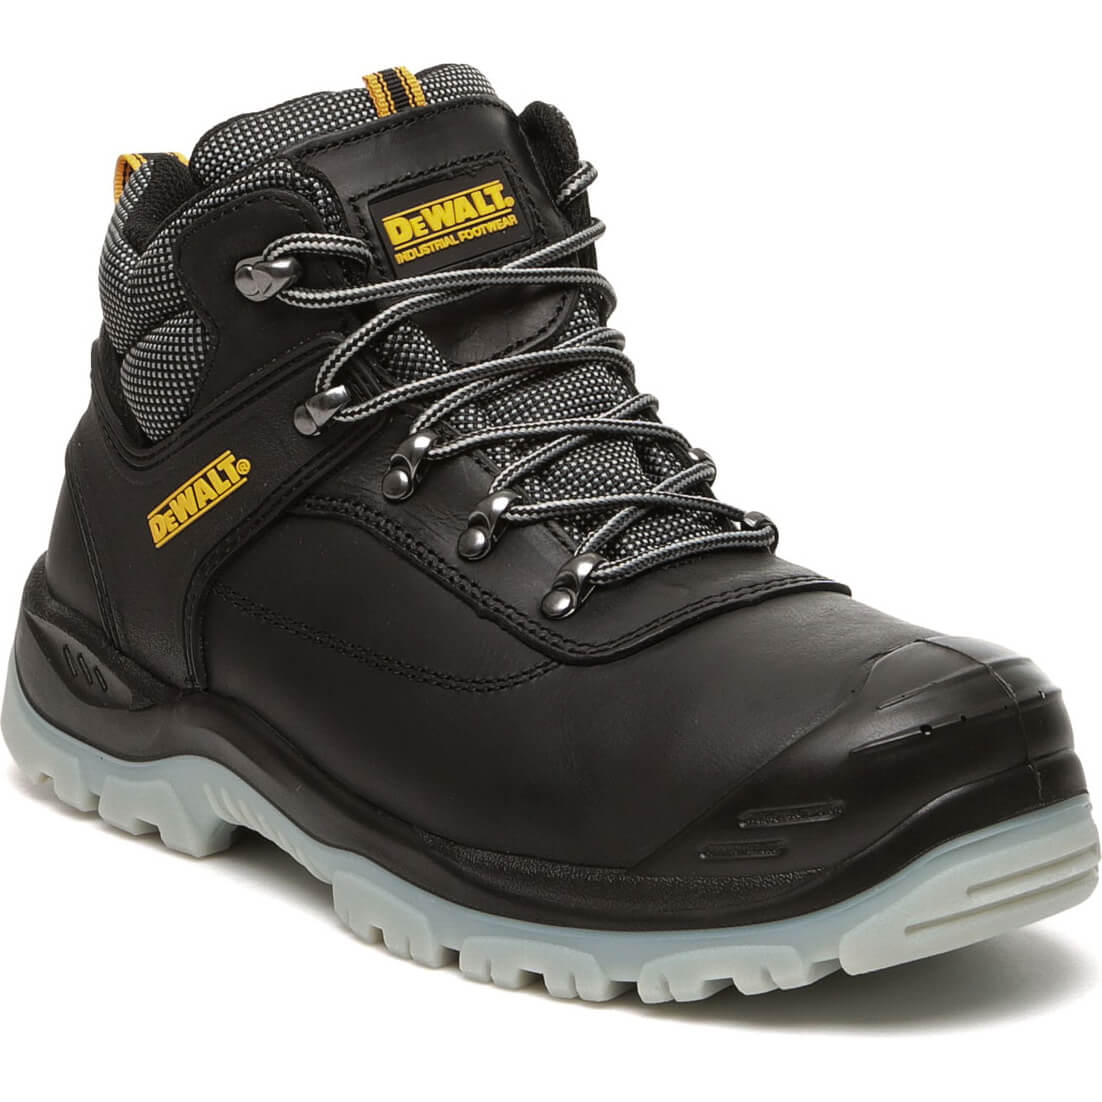 DeWalt Laser Safety Hiker Boots Black Size 9